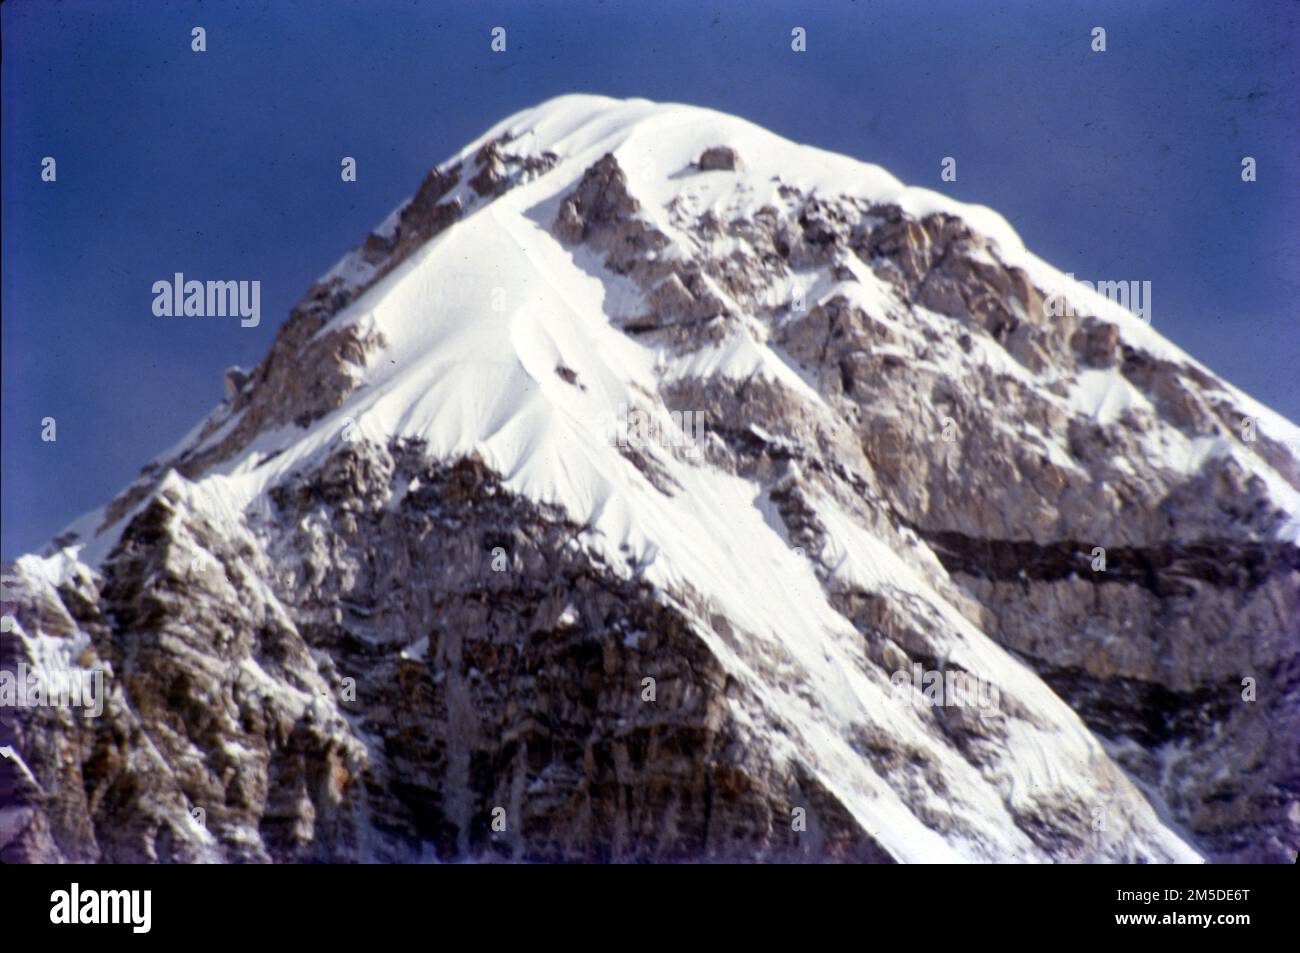 Pumori ist ein Berg an der nepalchinesischen Grenze im Mahalangur-Abschnitt des Himalaya. Pumori liegt nur acht Kilometer westlich vom Mount Everest. Pumori, das heißt "die Bergtochter" in Sherpa-Sprache, wurde von George Mallory benannt. „Pumo“ bedeutet „junges Mädchen“ oder „Tochter“ und „Ri“ bedeutet „Berg“ in Sherpa-Sprache. Stockfoto